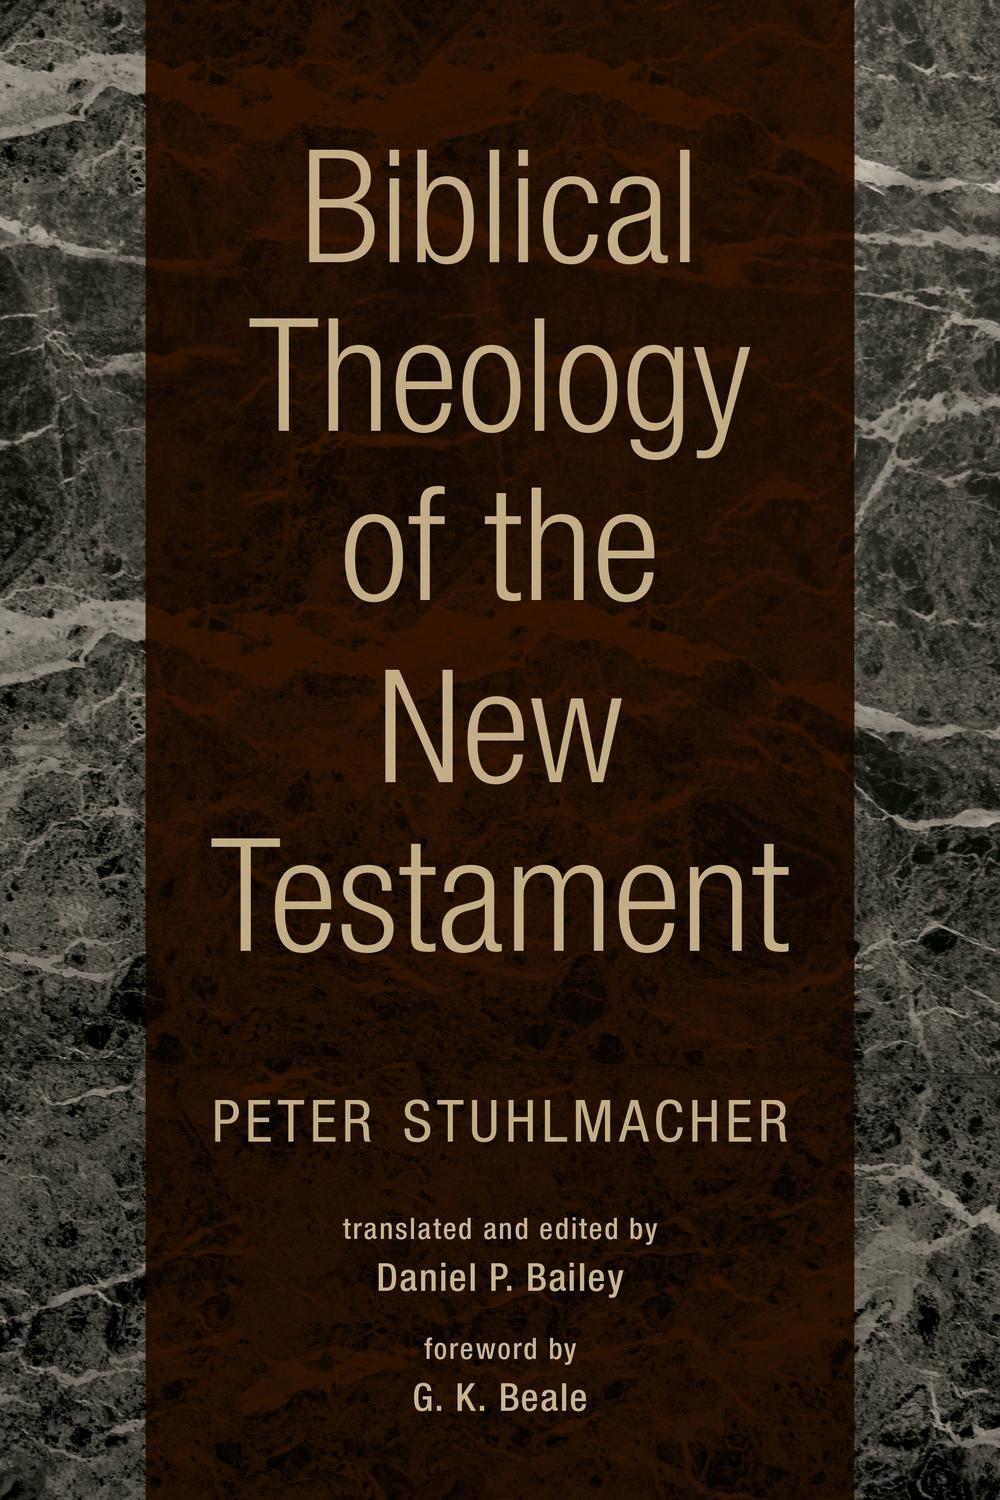 Biblical Theology of the New Testament - Peter Stuhlmacher,Daniel P. Bailey,